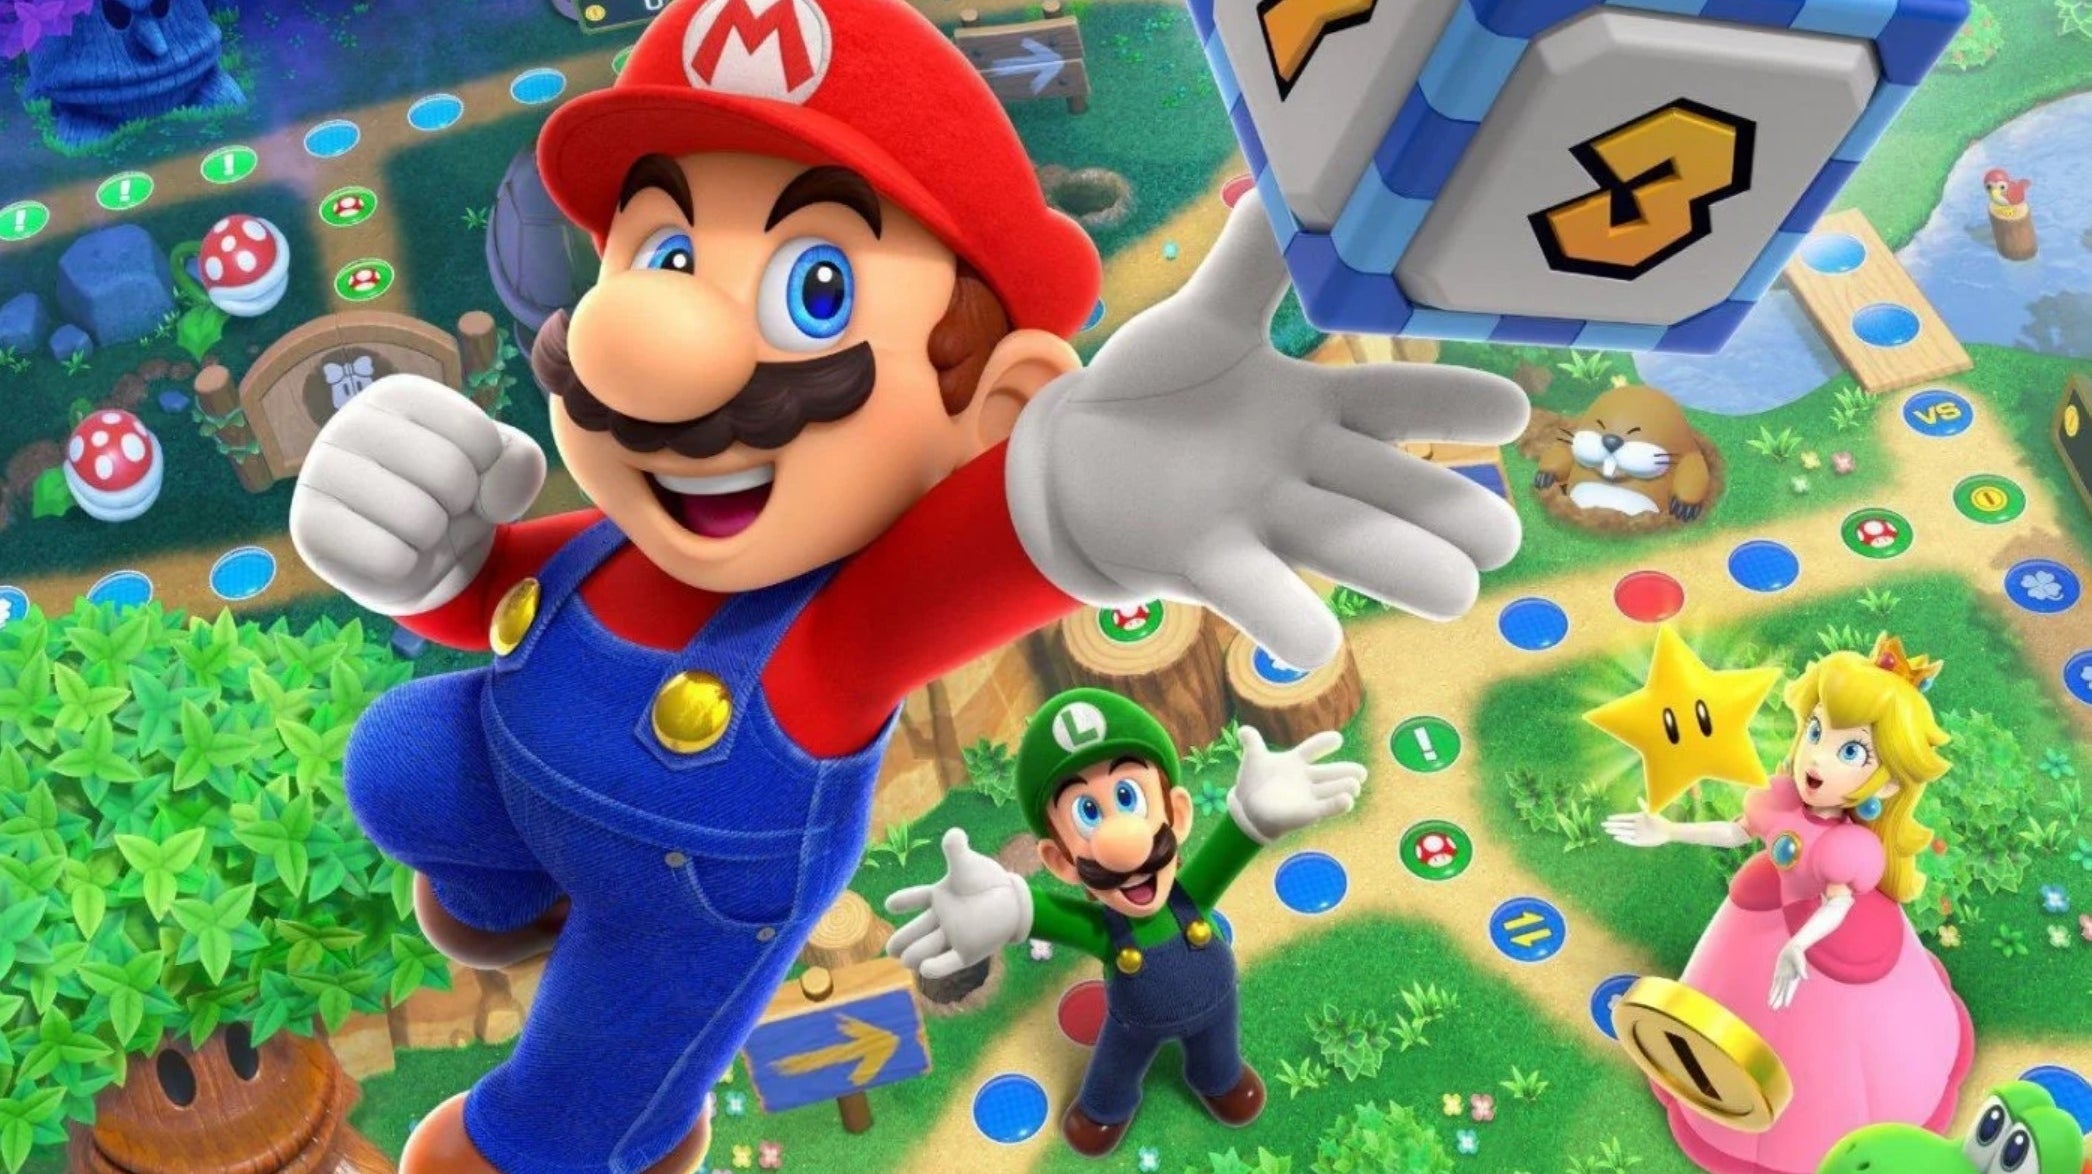 Immagine di Mario Party Superstars - Giochi di società nell'era del distanziamento sociale